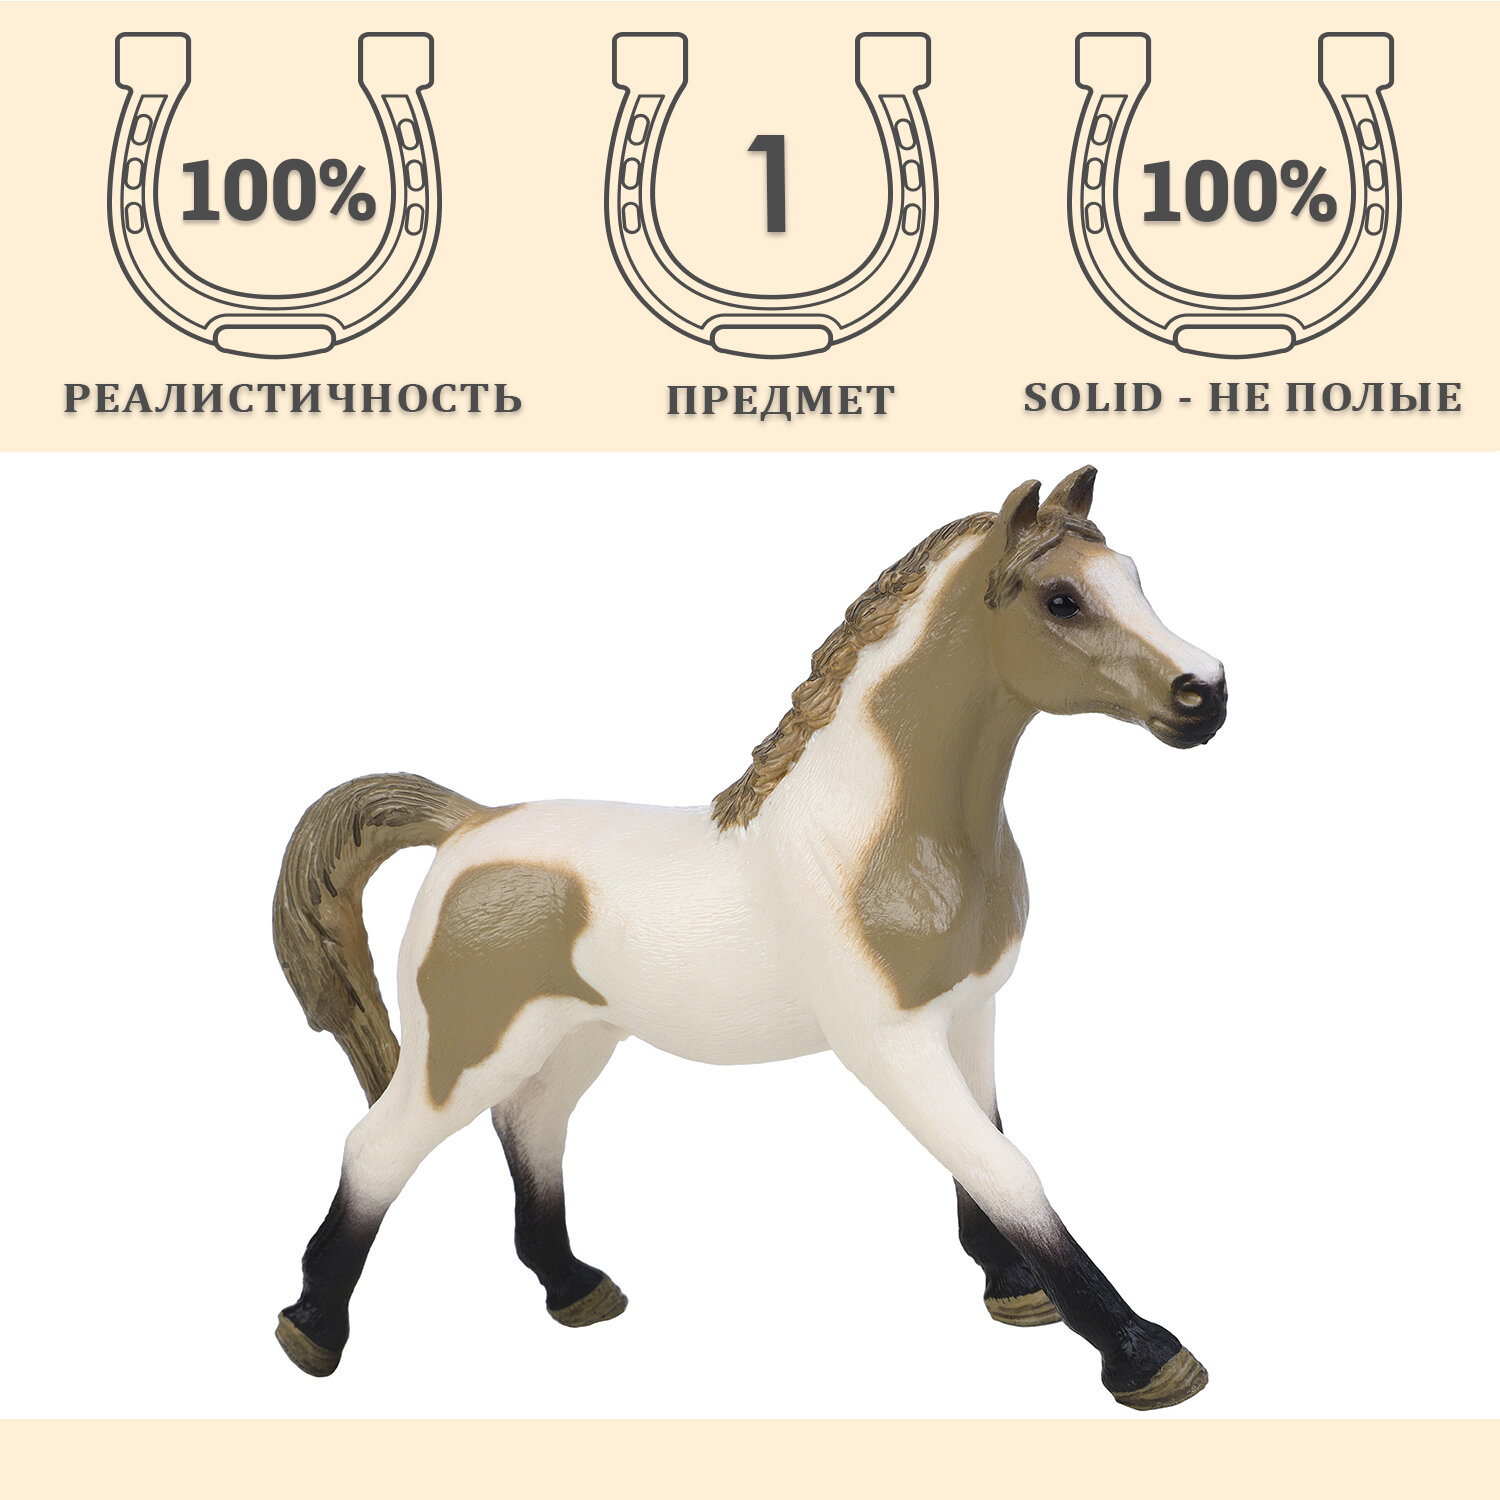 Фигурка игрушка серии "Мир лошадей": Лошадь бело-бежевая